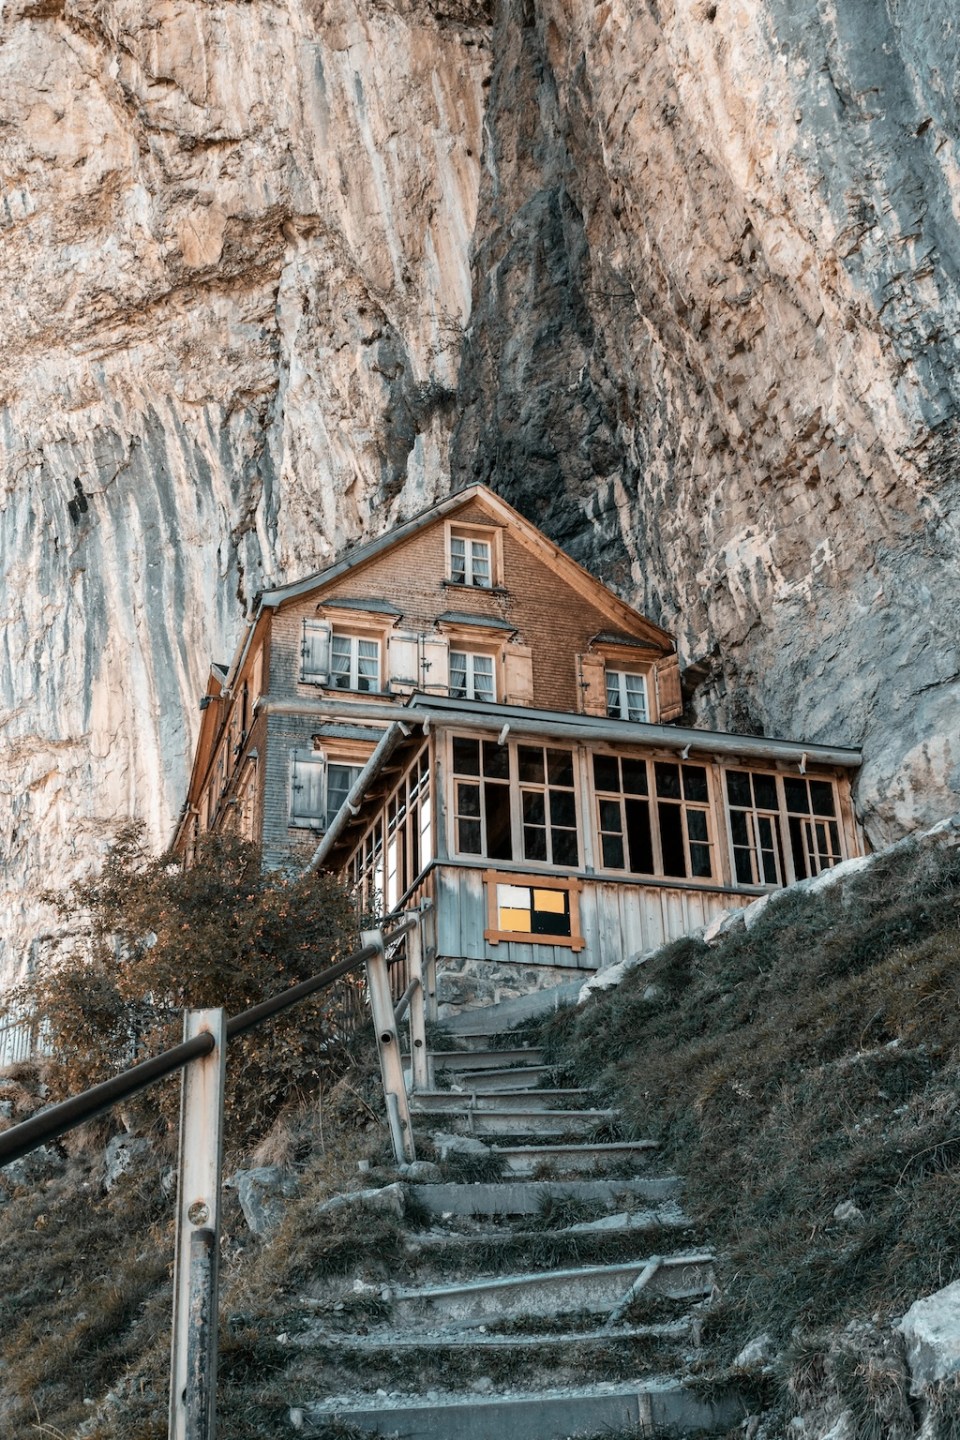 Switzerland, Ebenalp - September 27, 2018: famous mountain inn Aescher-Wildkirchli at the Ebenalp cliffs